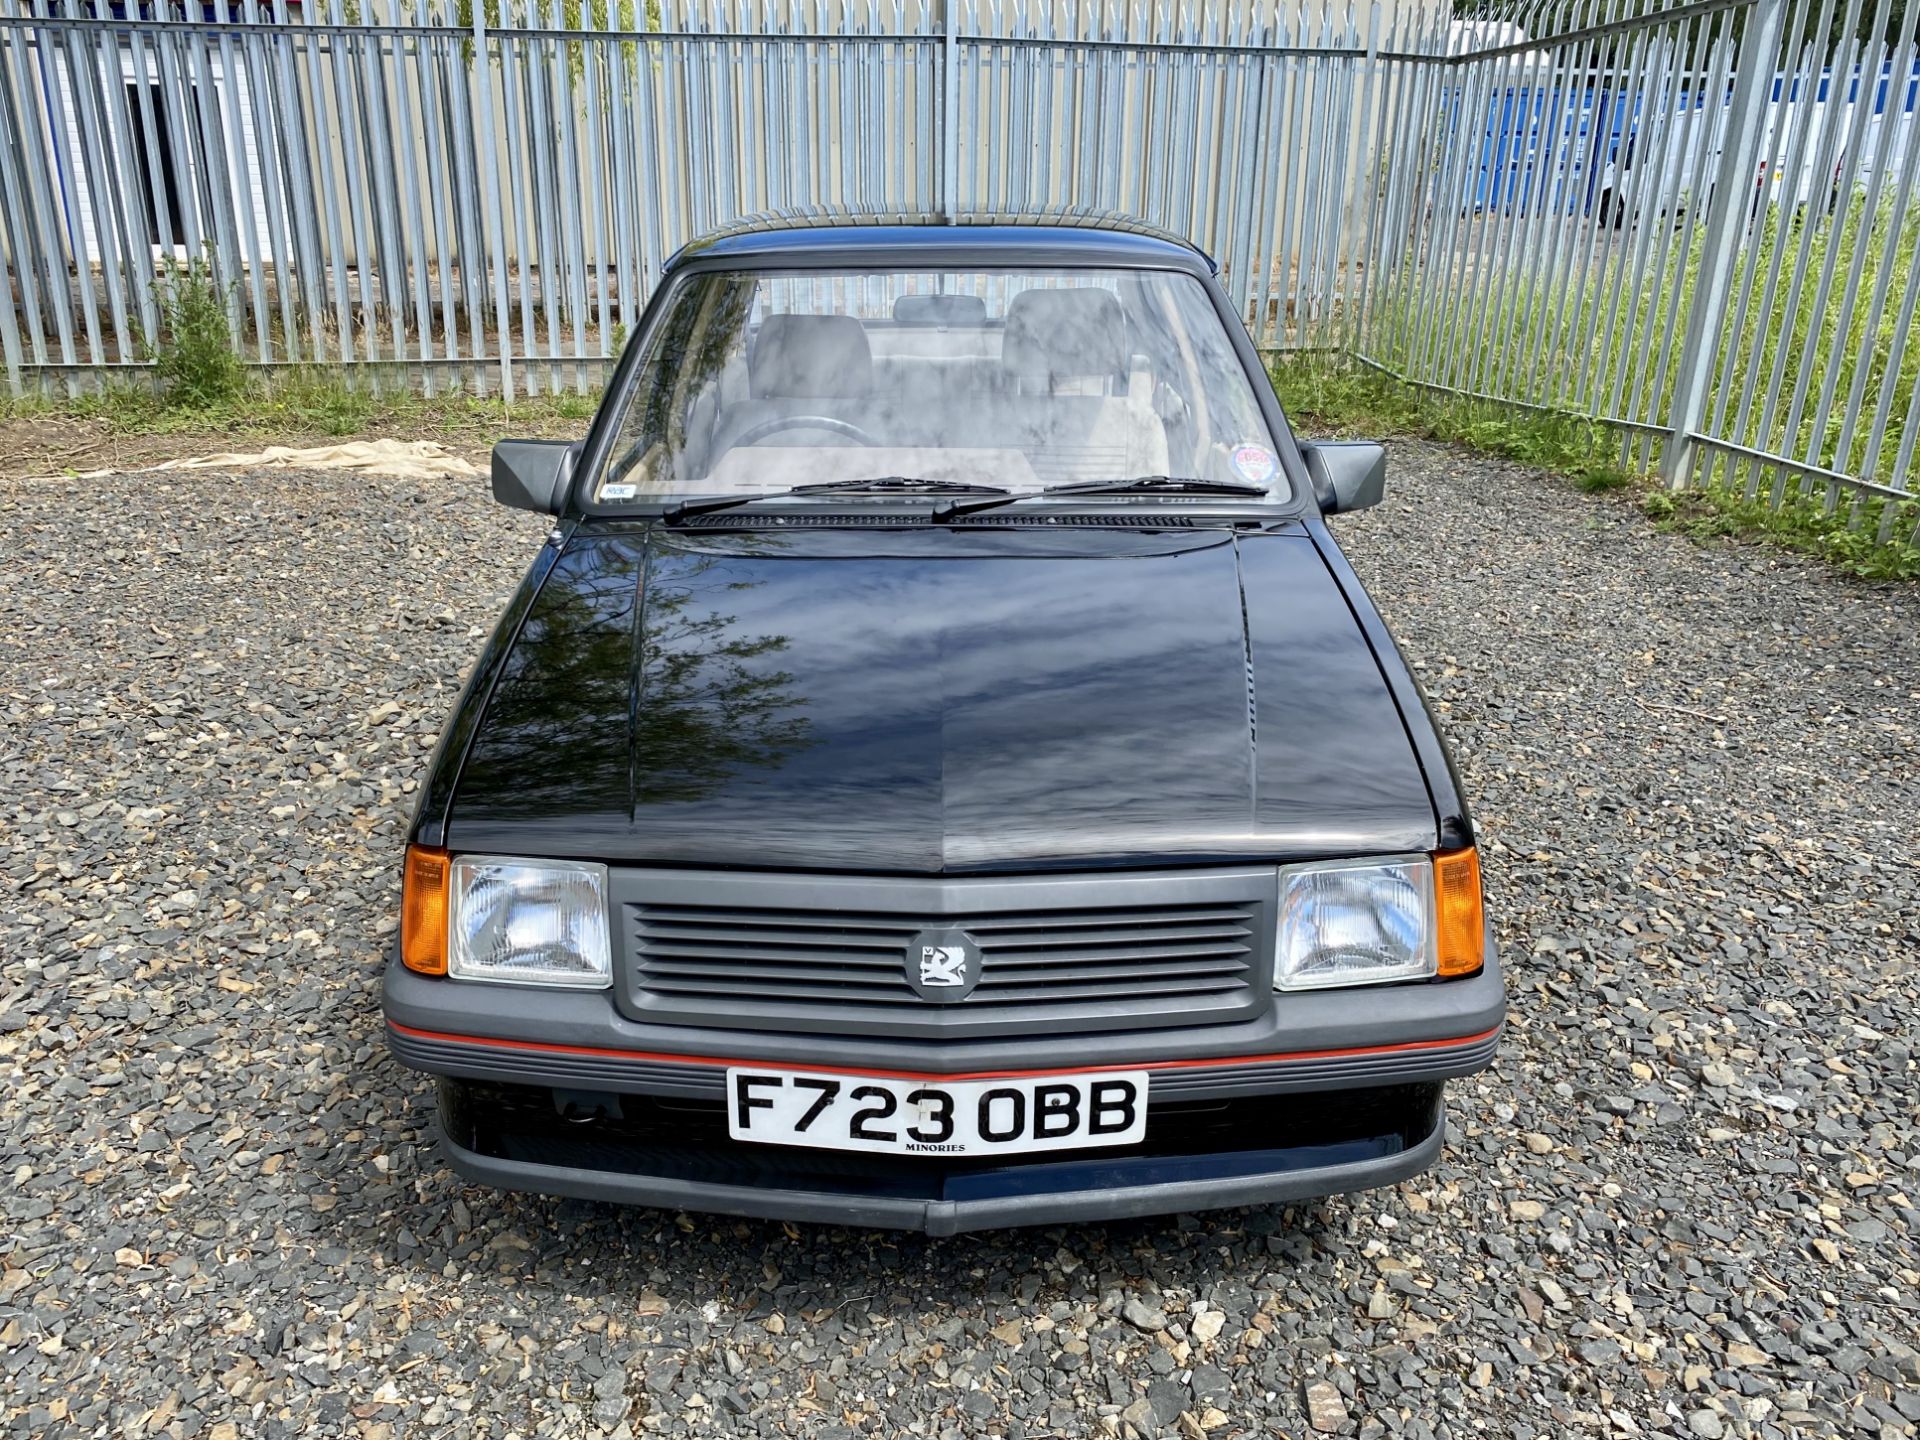 Vauxhall Nova Merit - Image 16 of 39